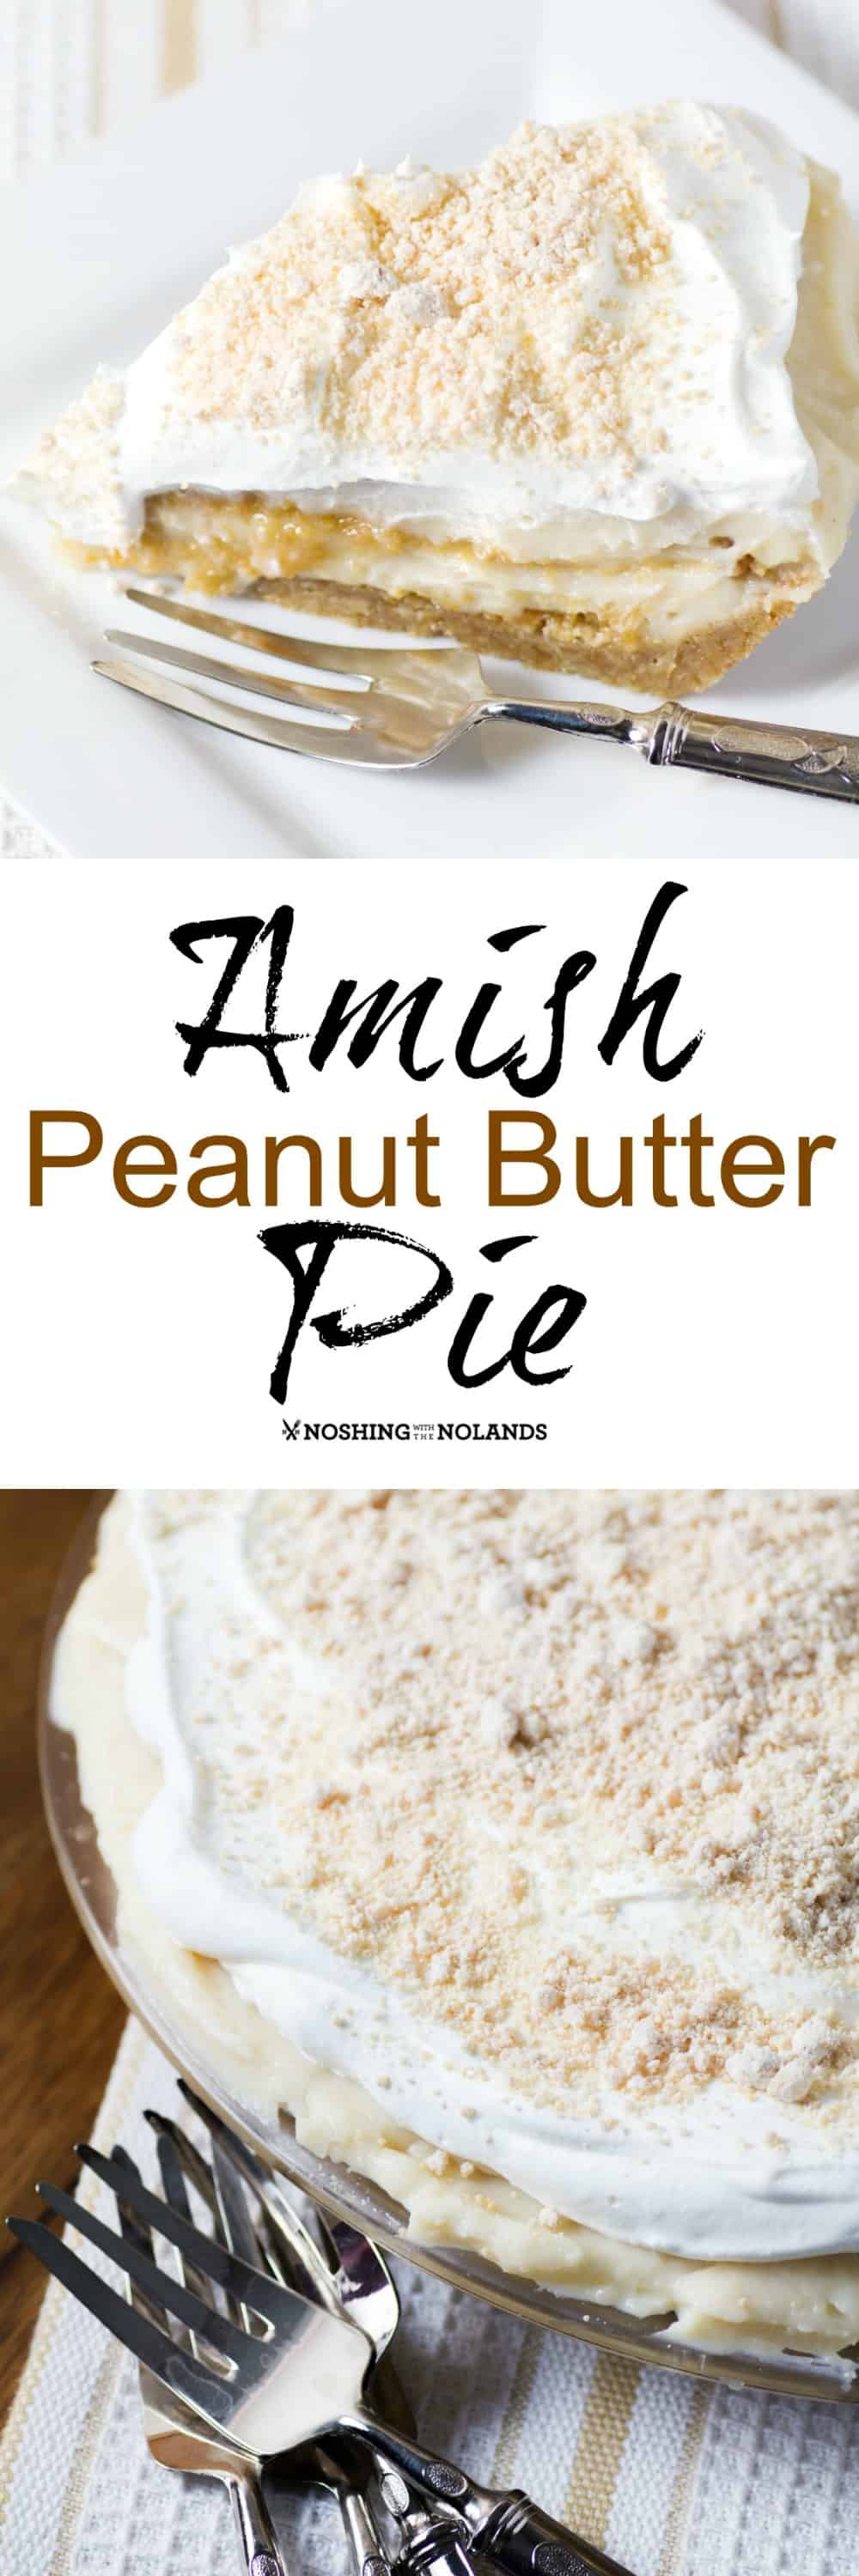 Amish Peanut Butter Pie
 Amish Peanut Butter Pie